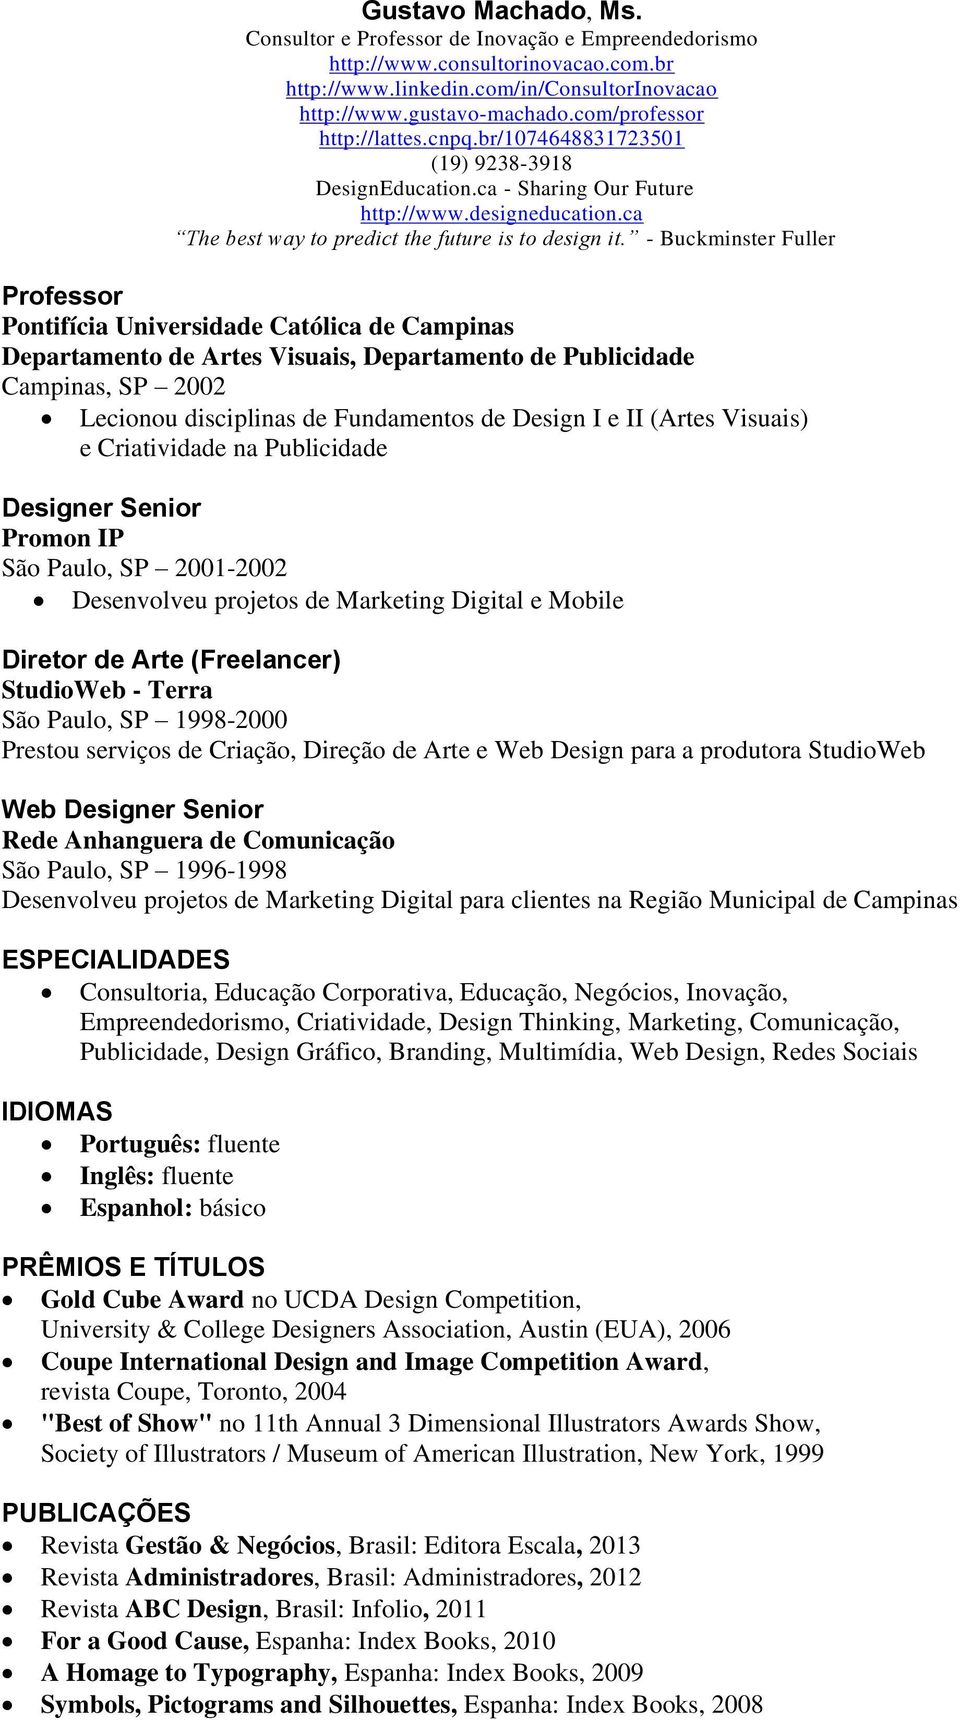 (Freelancer) StudioWeb - Terra São Paulo, SP 1998-2000 Prestou serviços de Criação, Direção de Arte e Web Design para a produtora StudioWeb Web Designer Senior Rede Anhanguera de Comunicação São